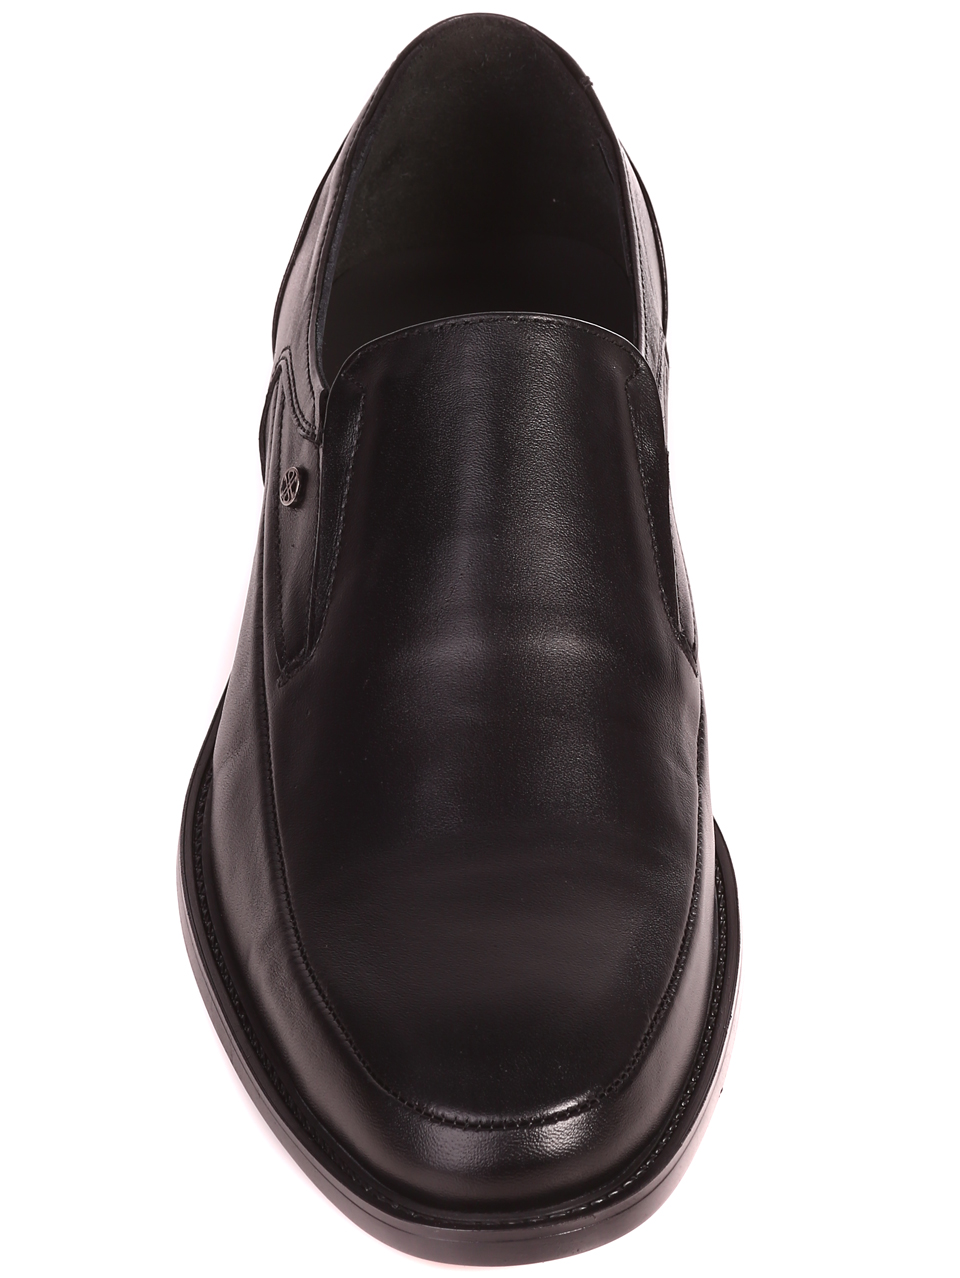 Елегантни мъжки обувки от естествена кожа 153-5834 black